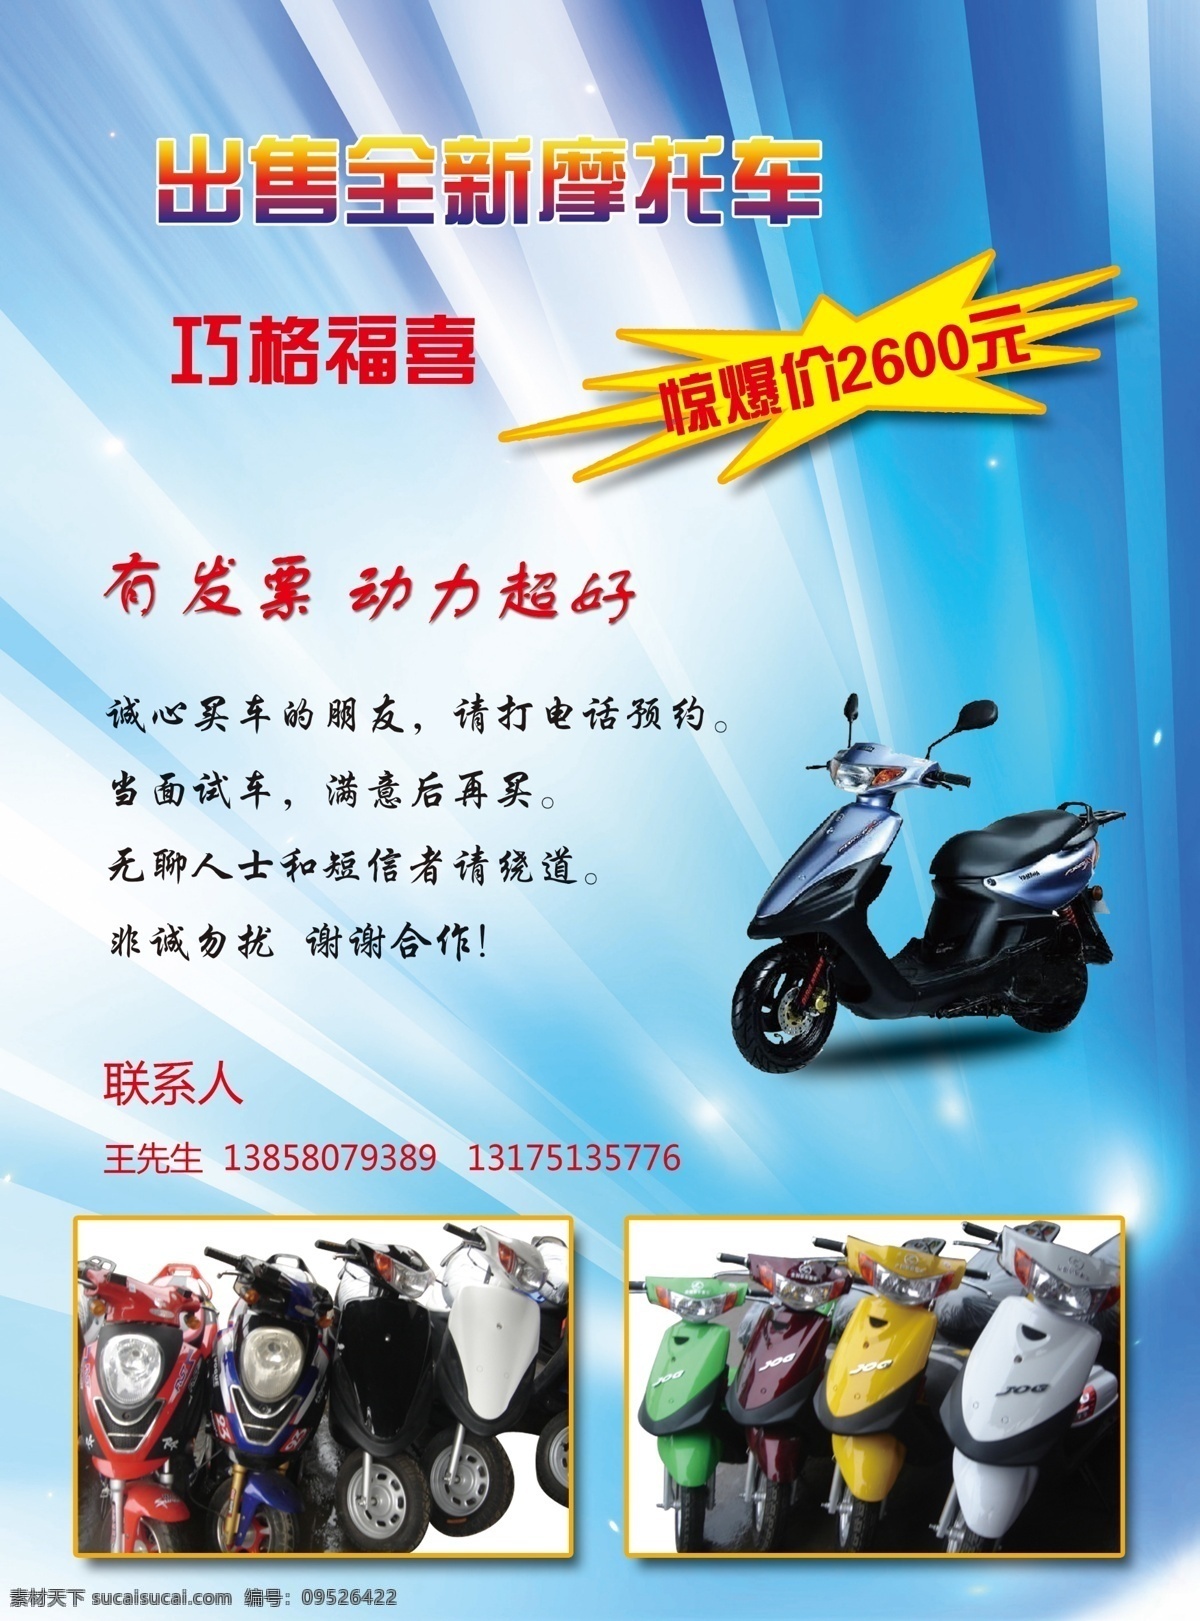 摩托车海报 出售 摩托车 海报 单页 广告设计模板 源文件